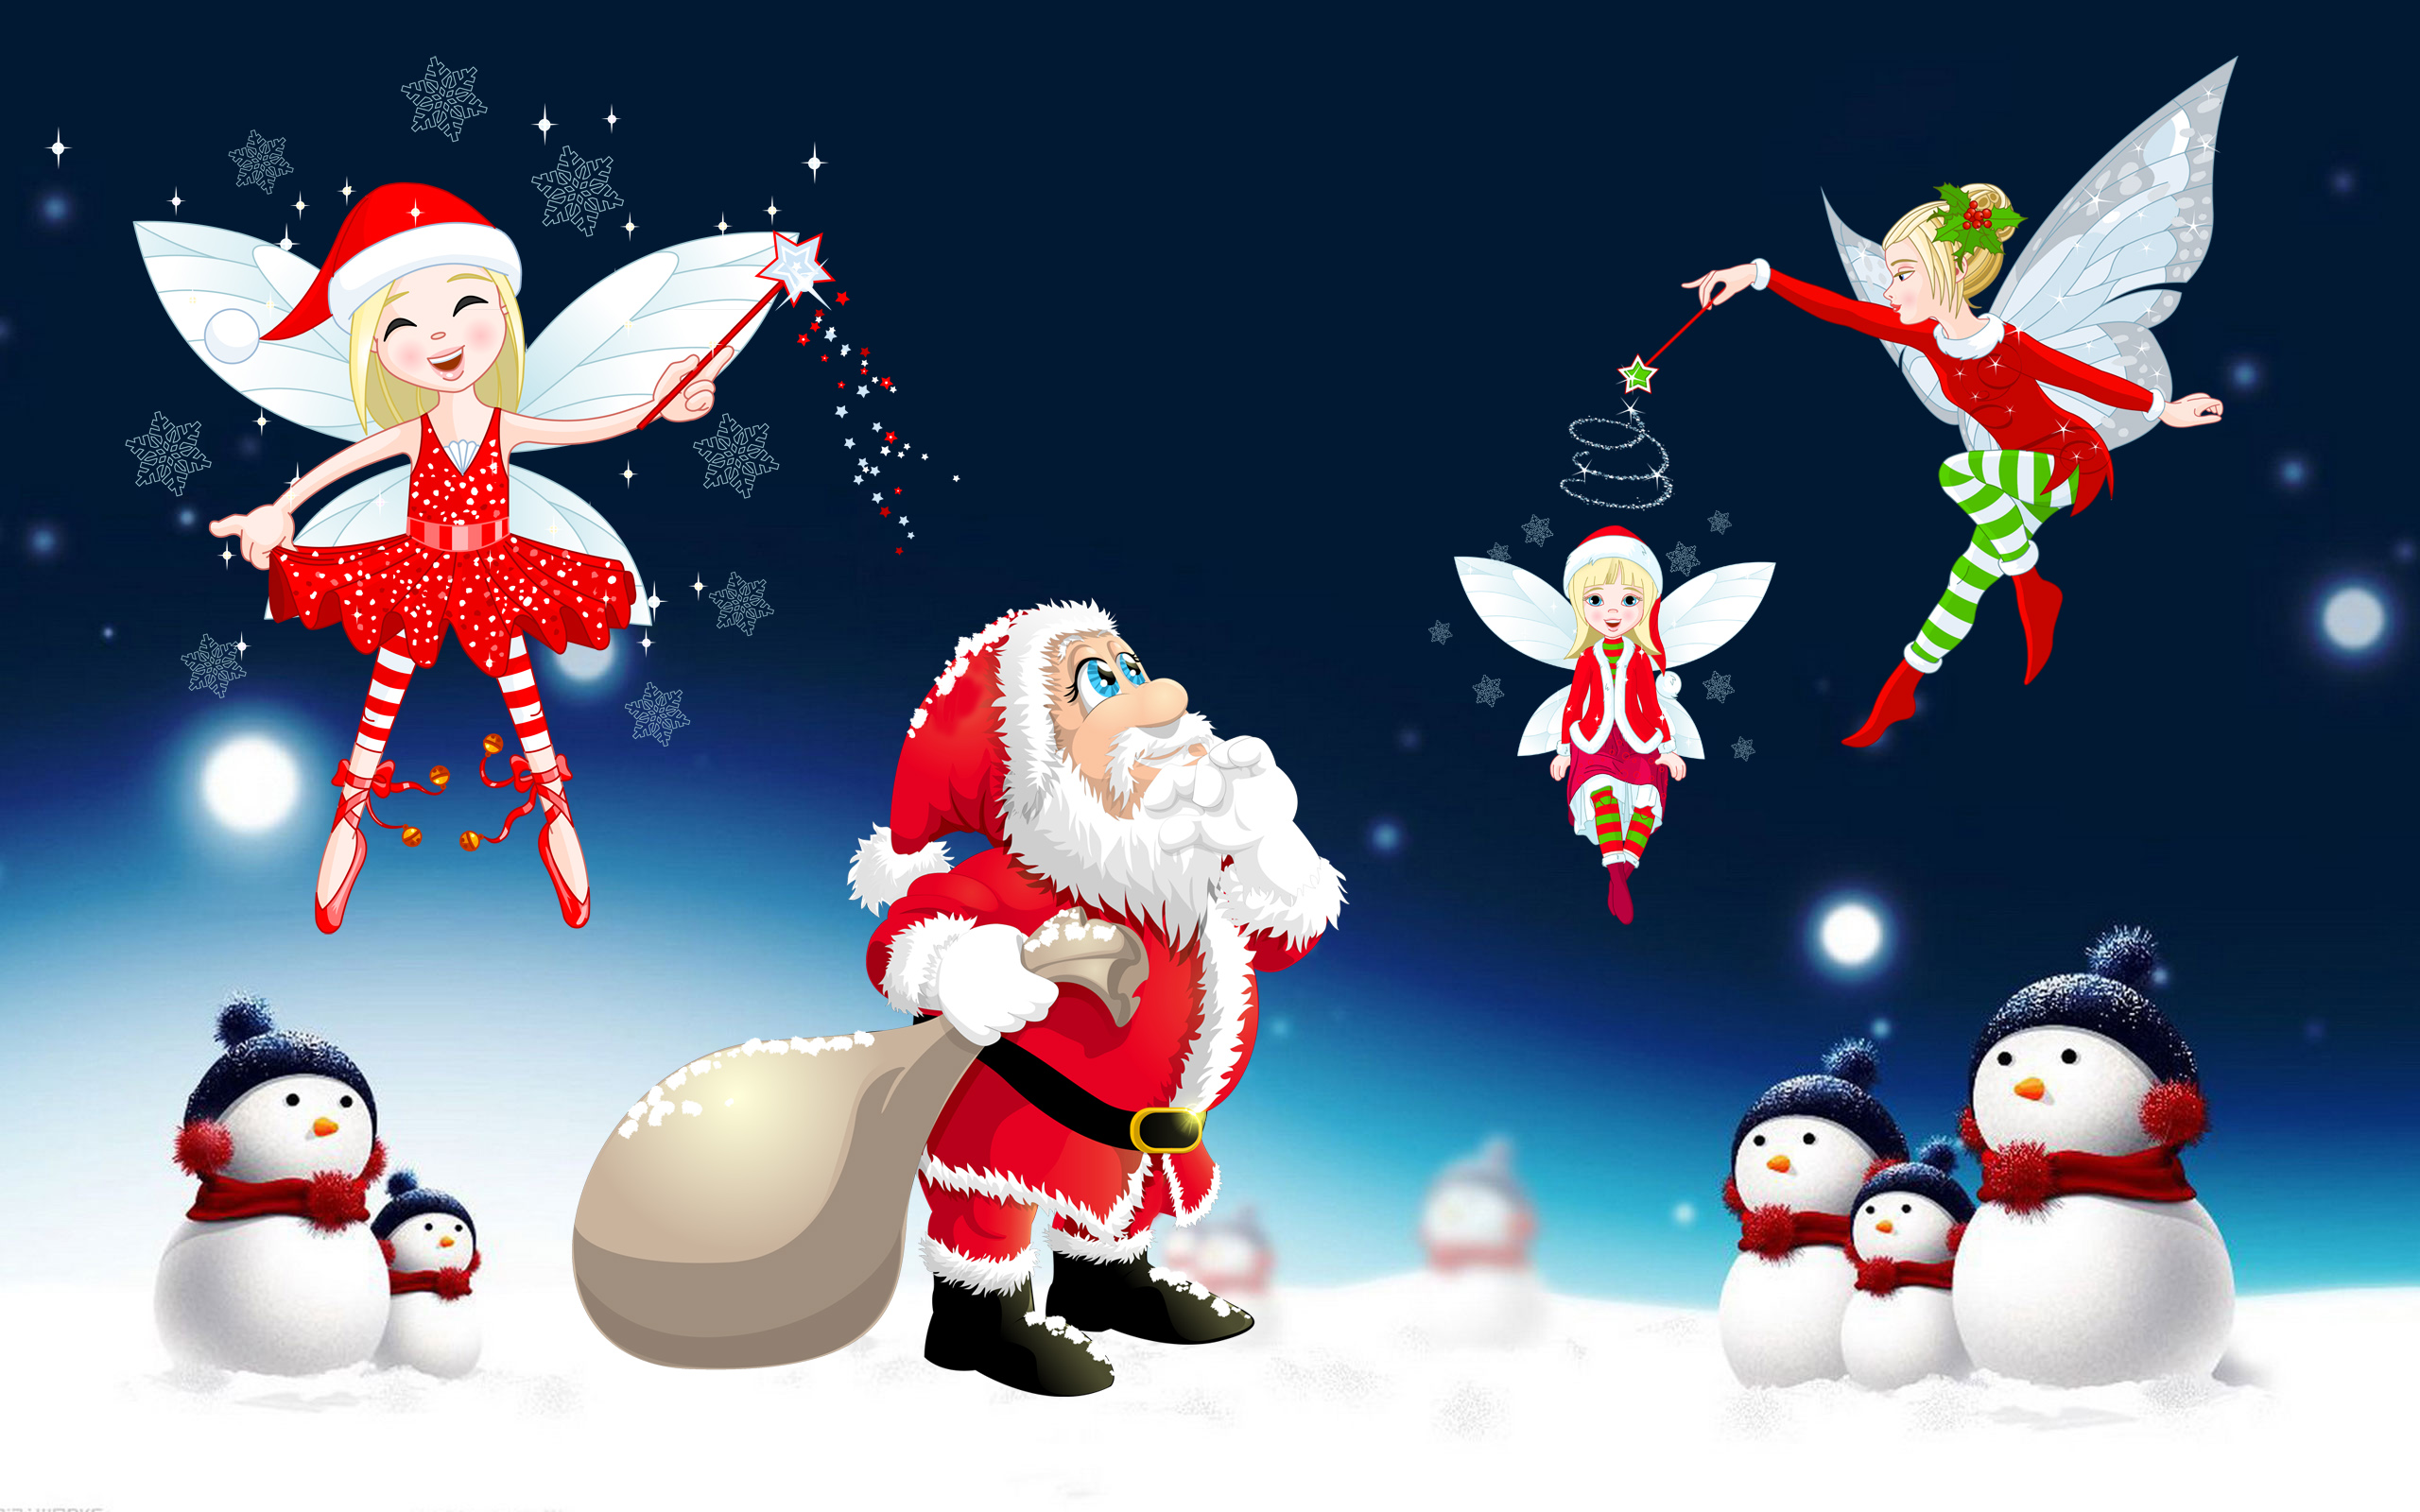 산타 클로스 라이브 배경 화면,산타 클로스,소설 속의 인물,크리스마스,크리스마스 이브,작은 입상